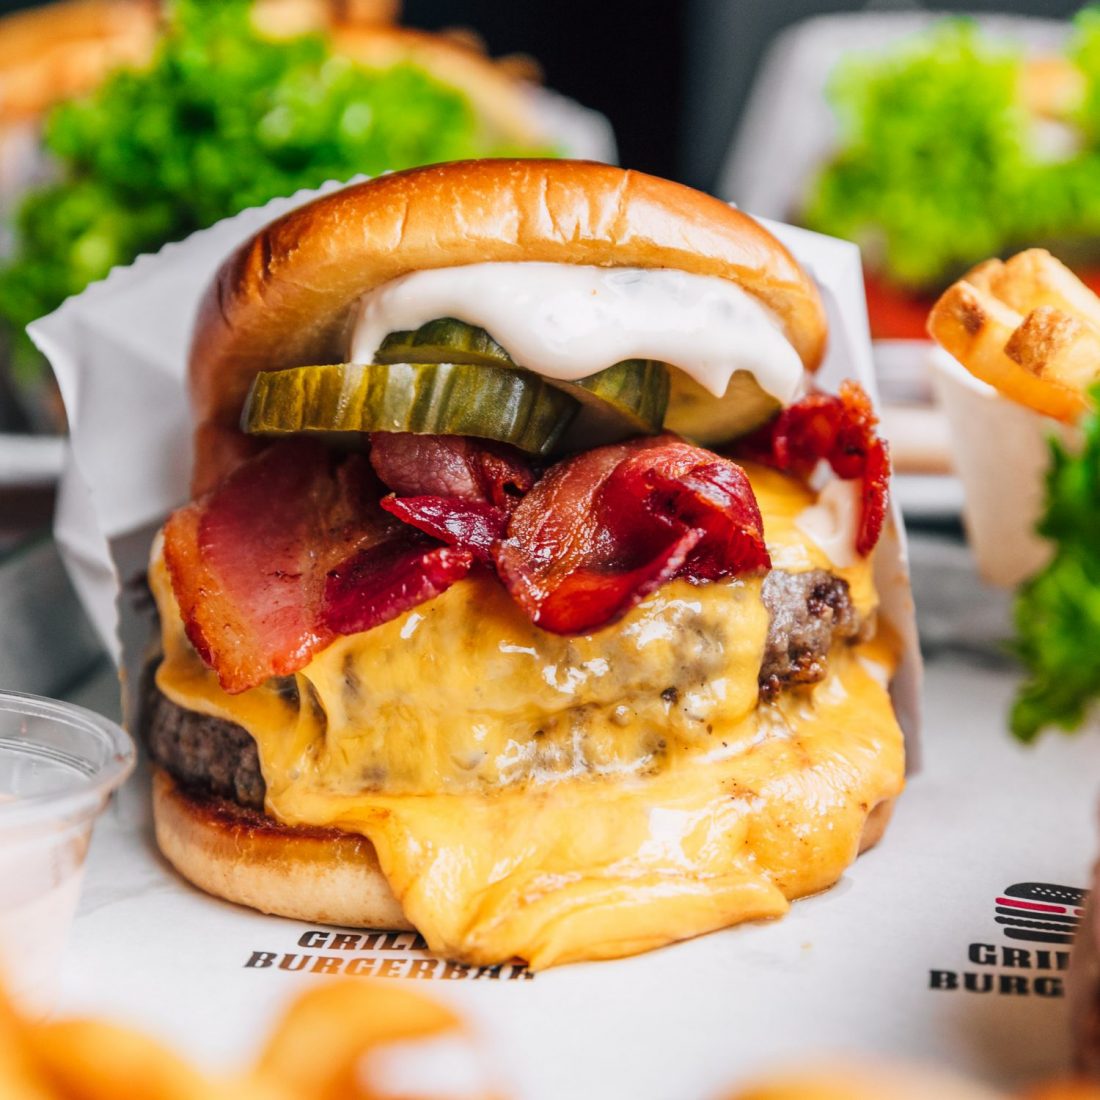 Soldat Uden peddling Restaurant Amager - Øens bedste burger på Grillen Burgerbar